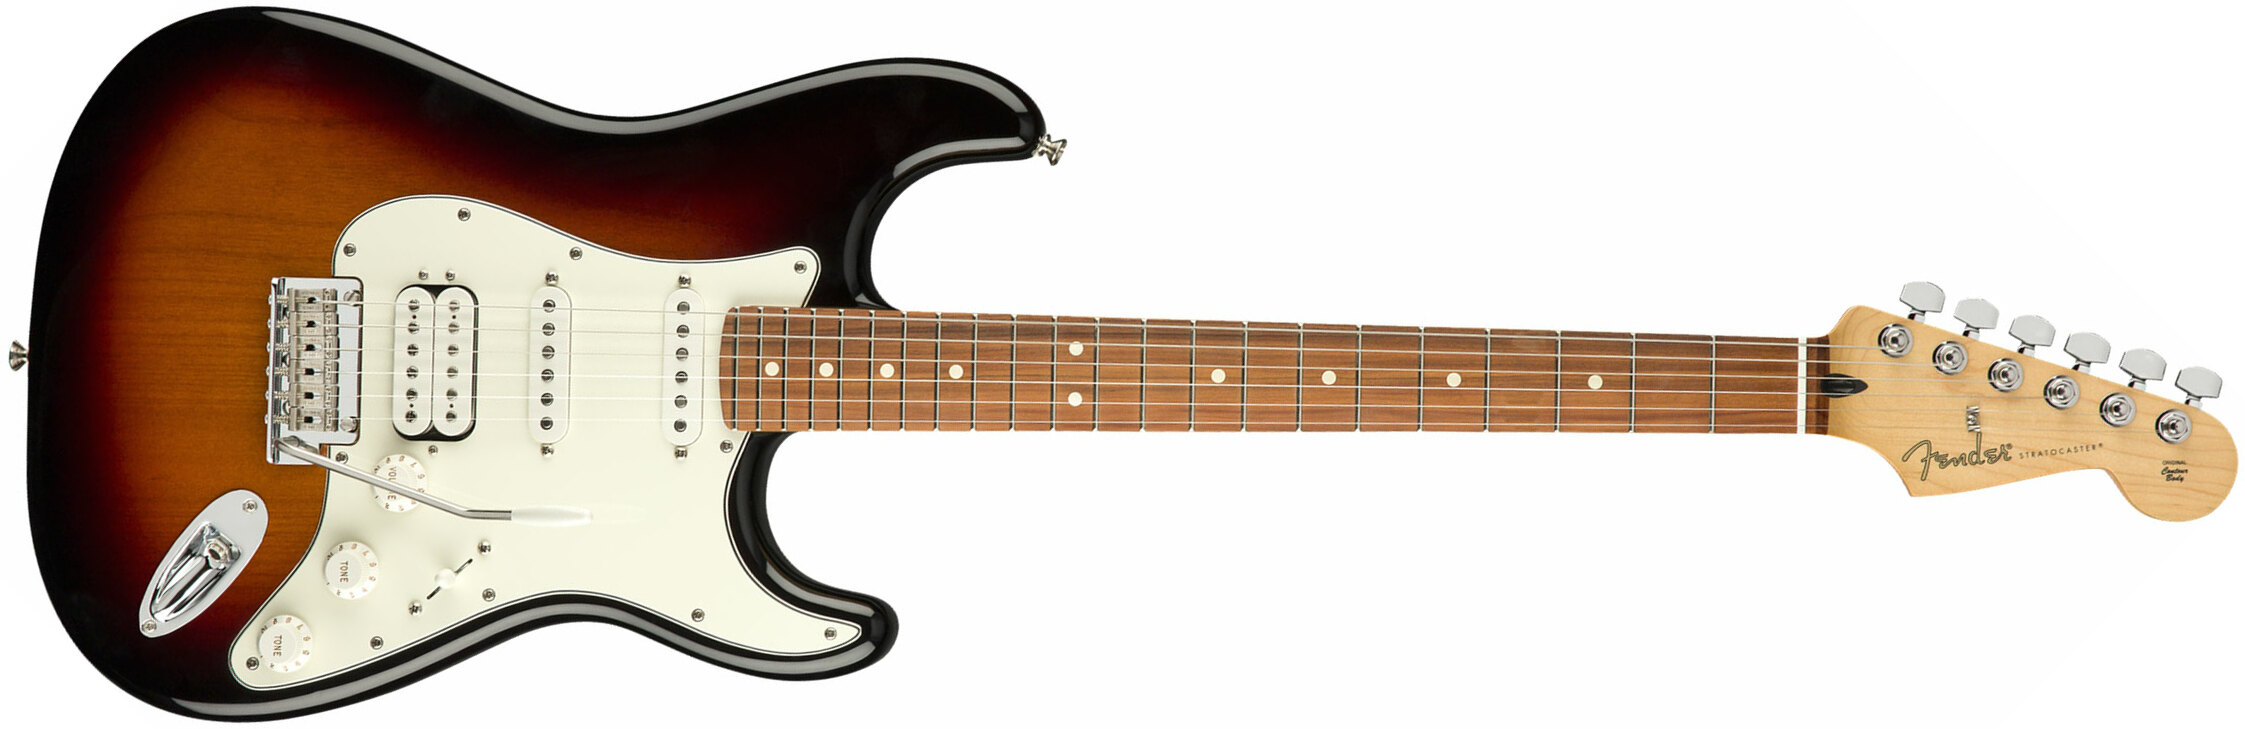 Fender Strat Player Mex Hss Pf - 3-color Sunburst - Str shape electric guitar - Main picture